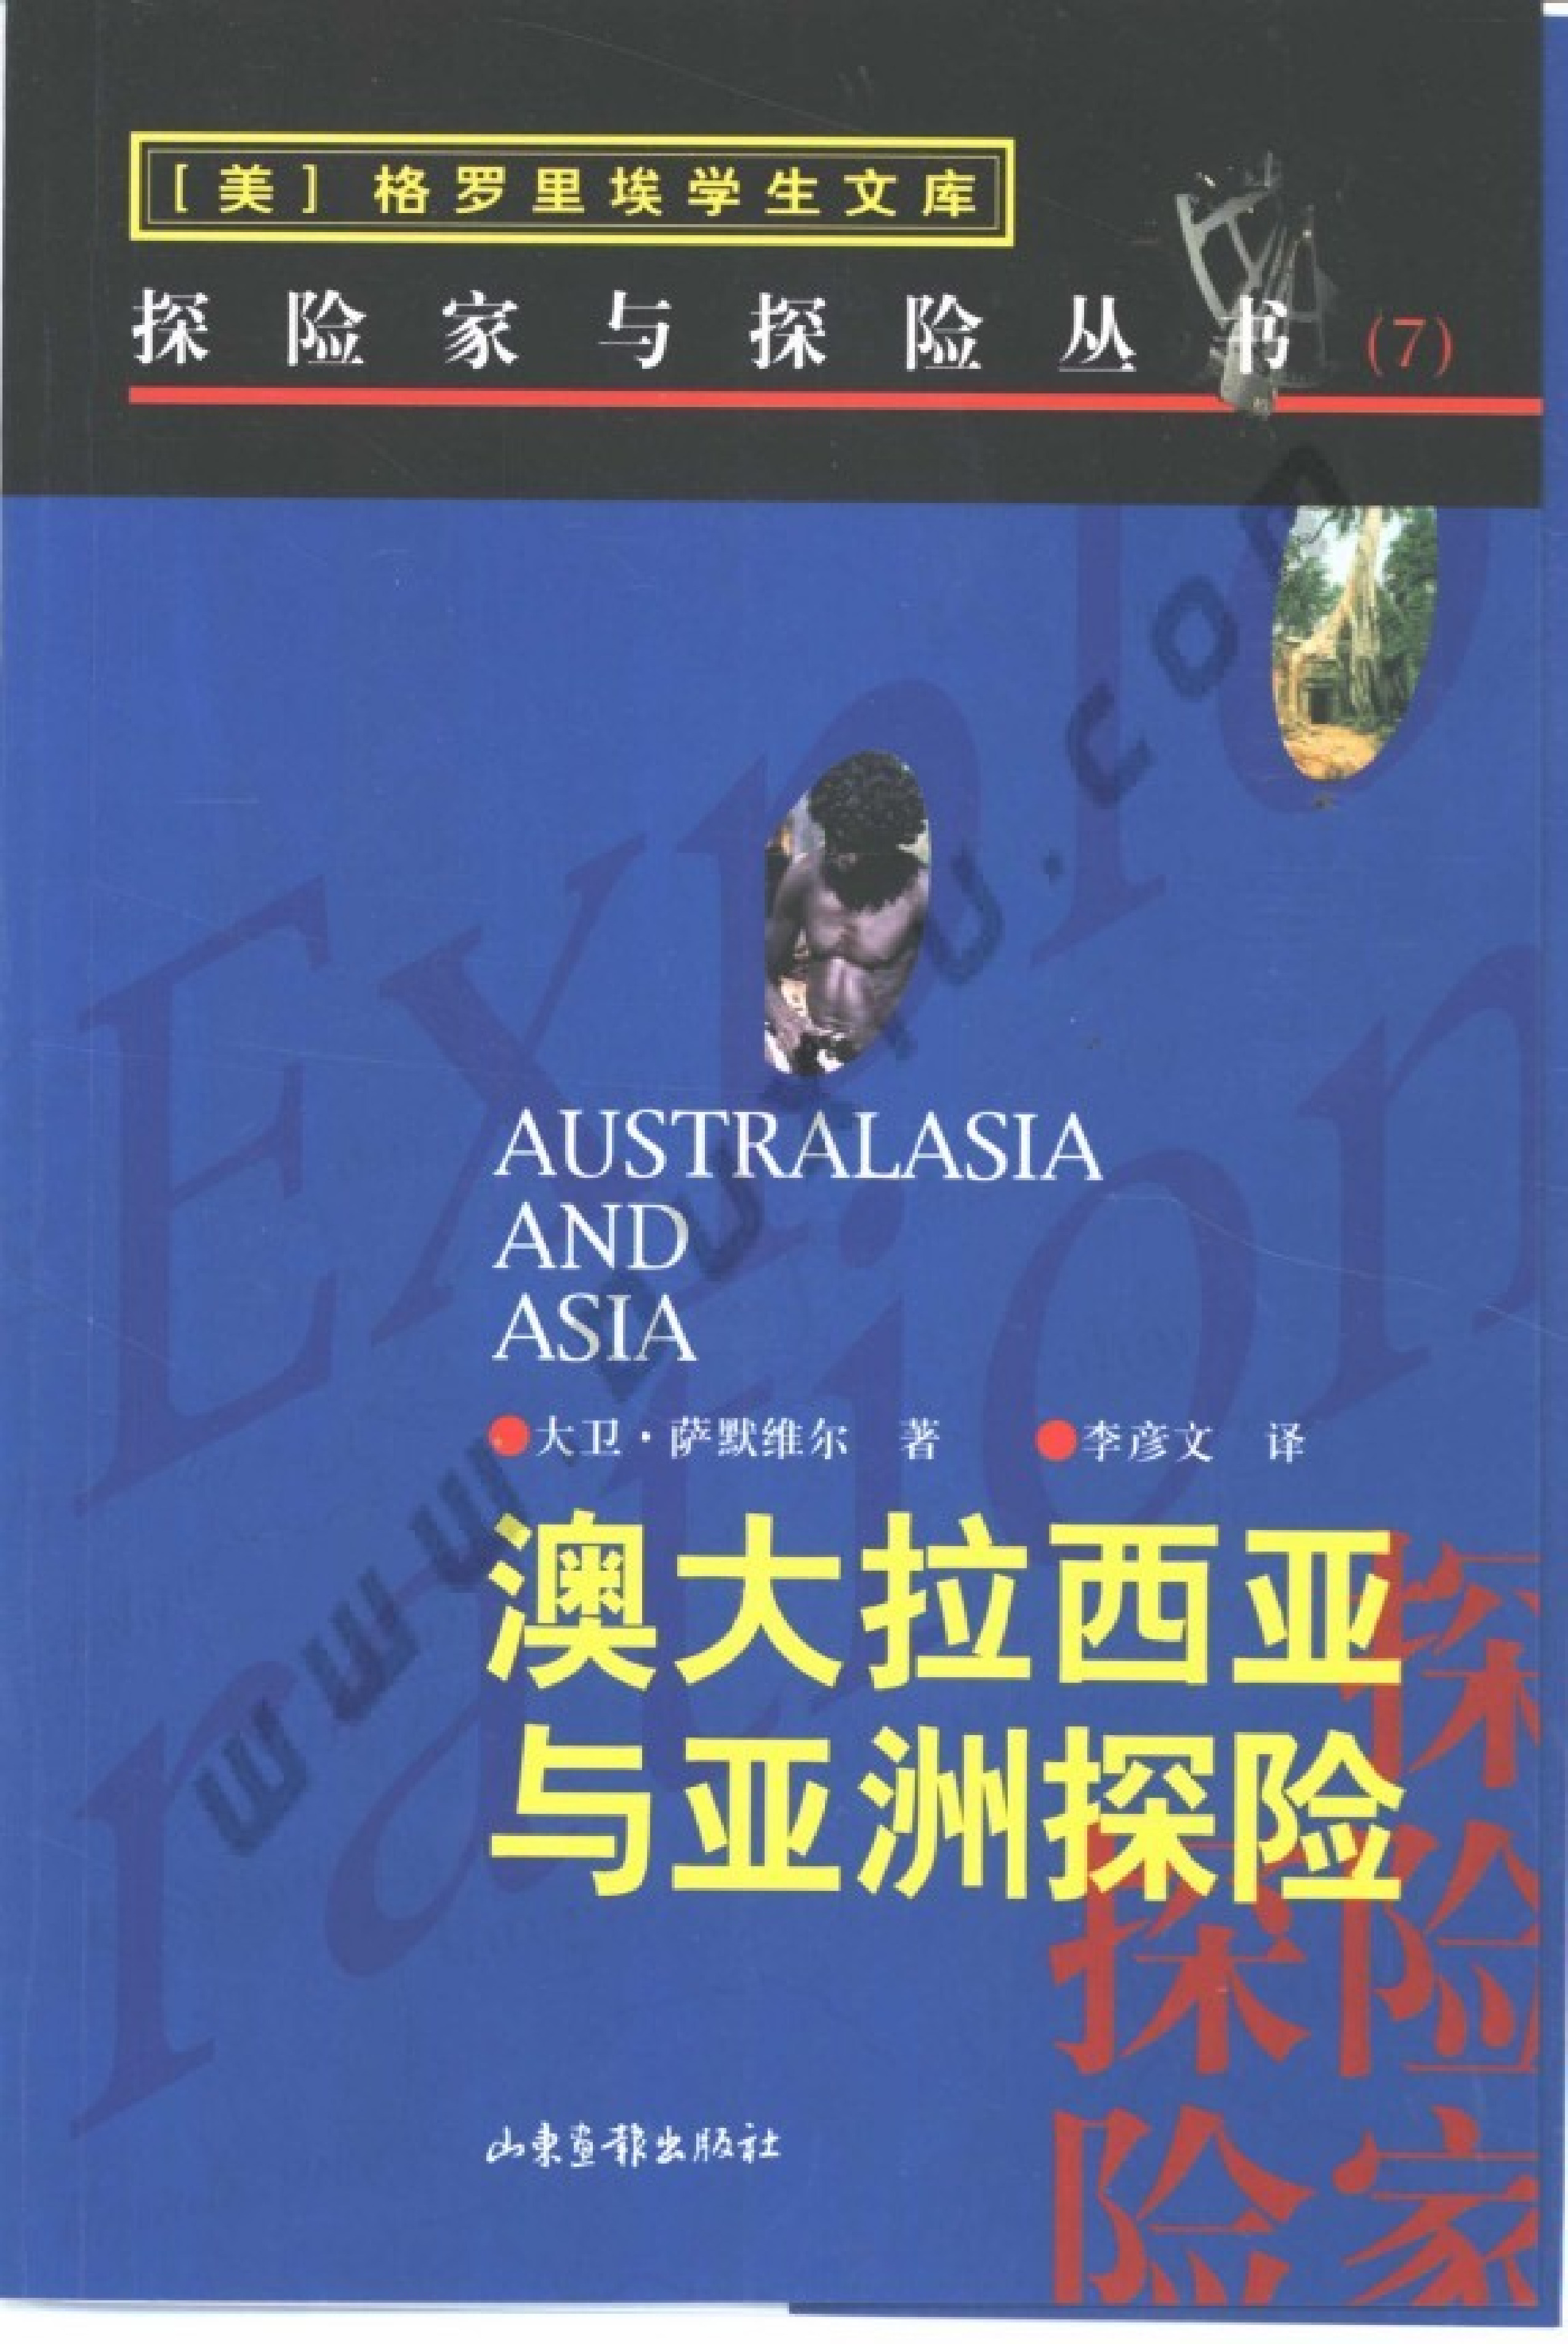 07 澳大拉西亚与亚洲探险